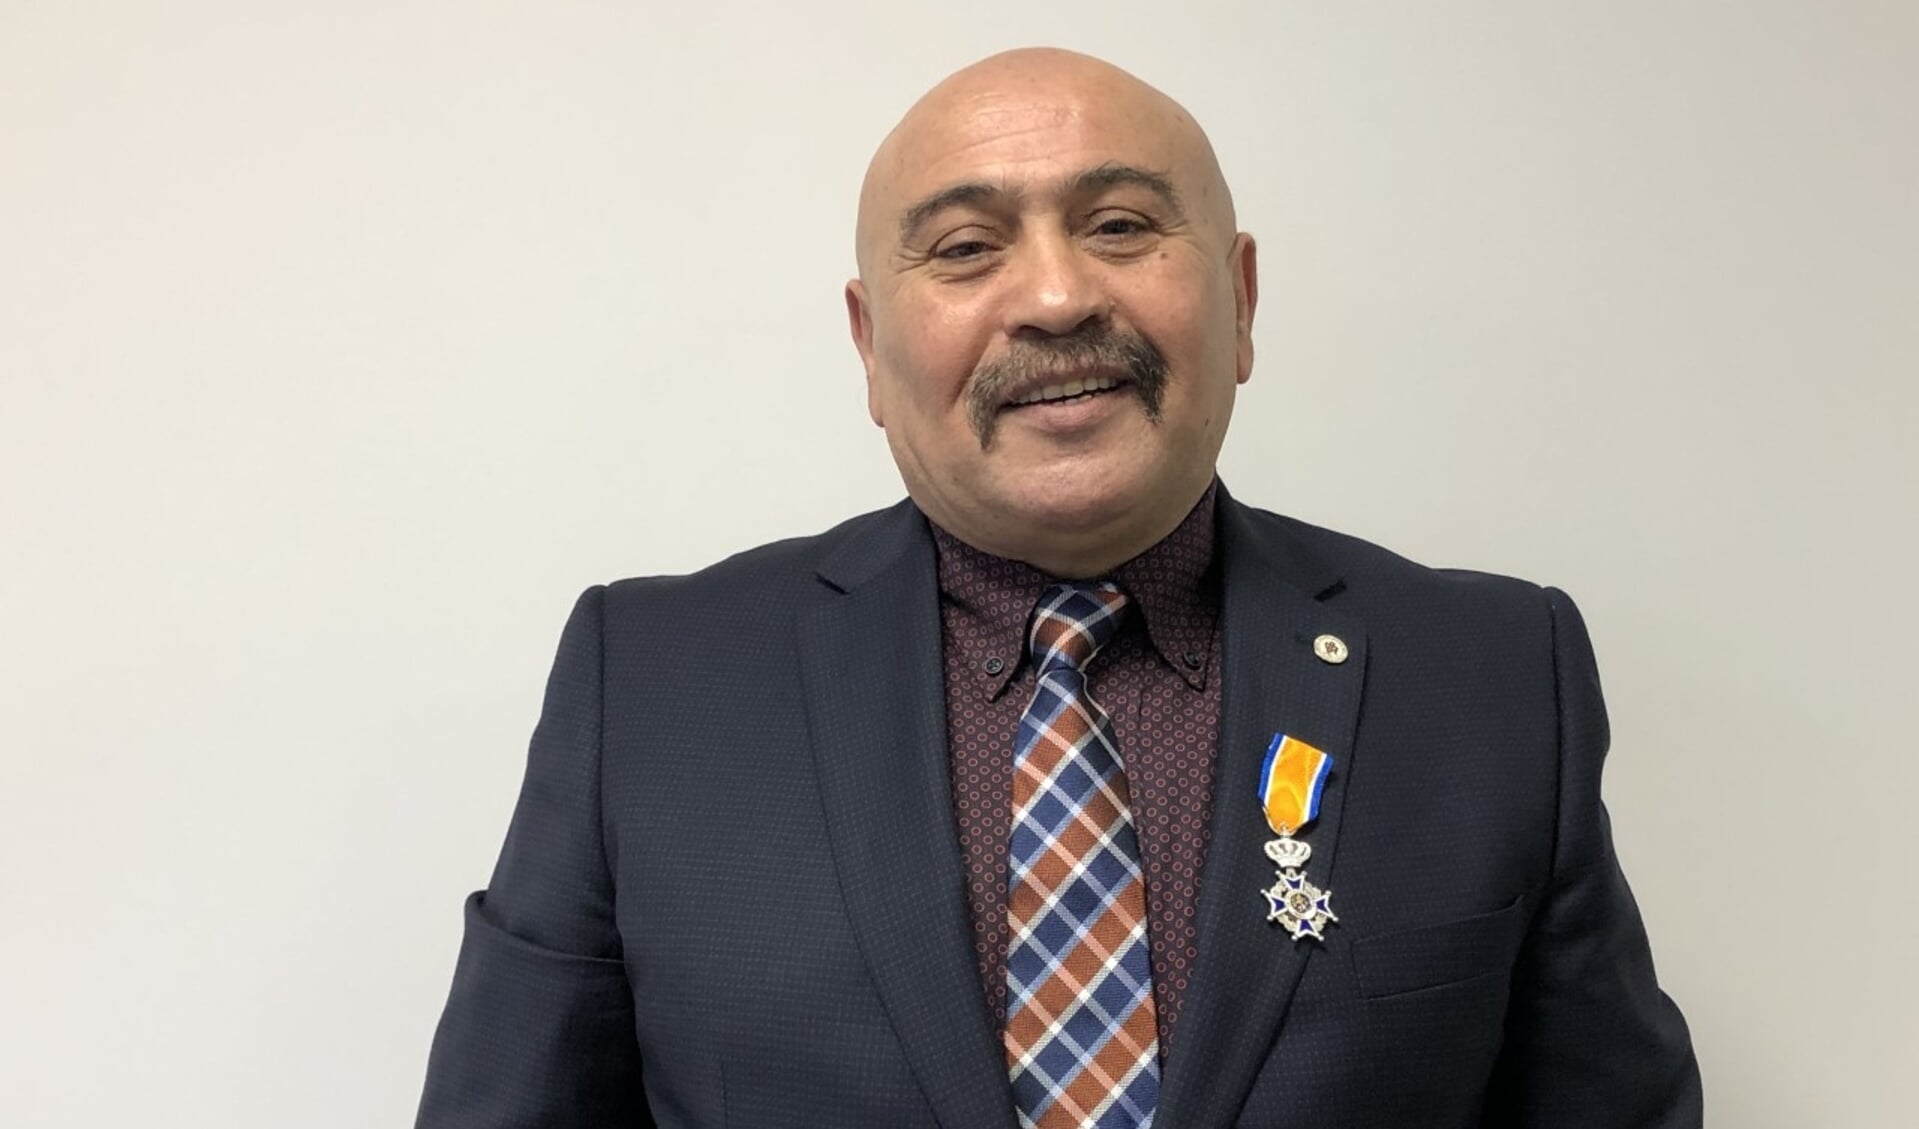 De heer Ali Alicikus (60) uit Den Bosch is afgelopen vrijdag bij Koninklijk Besluit benoemd tot Lid in de Orde van Oranje-Nassau.